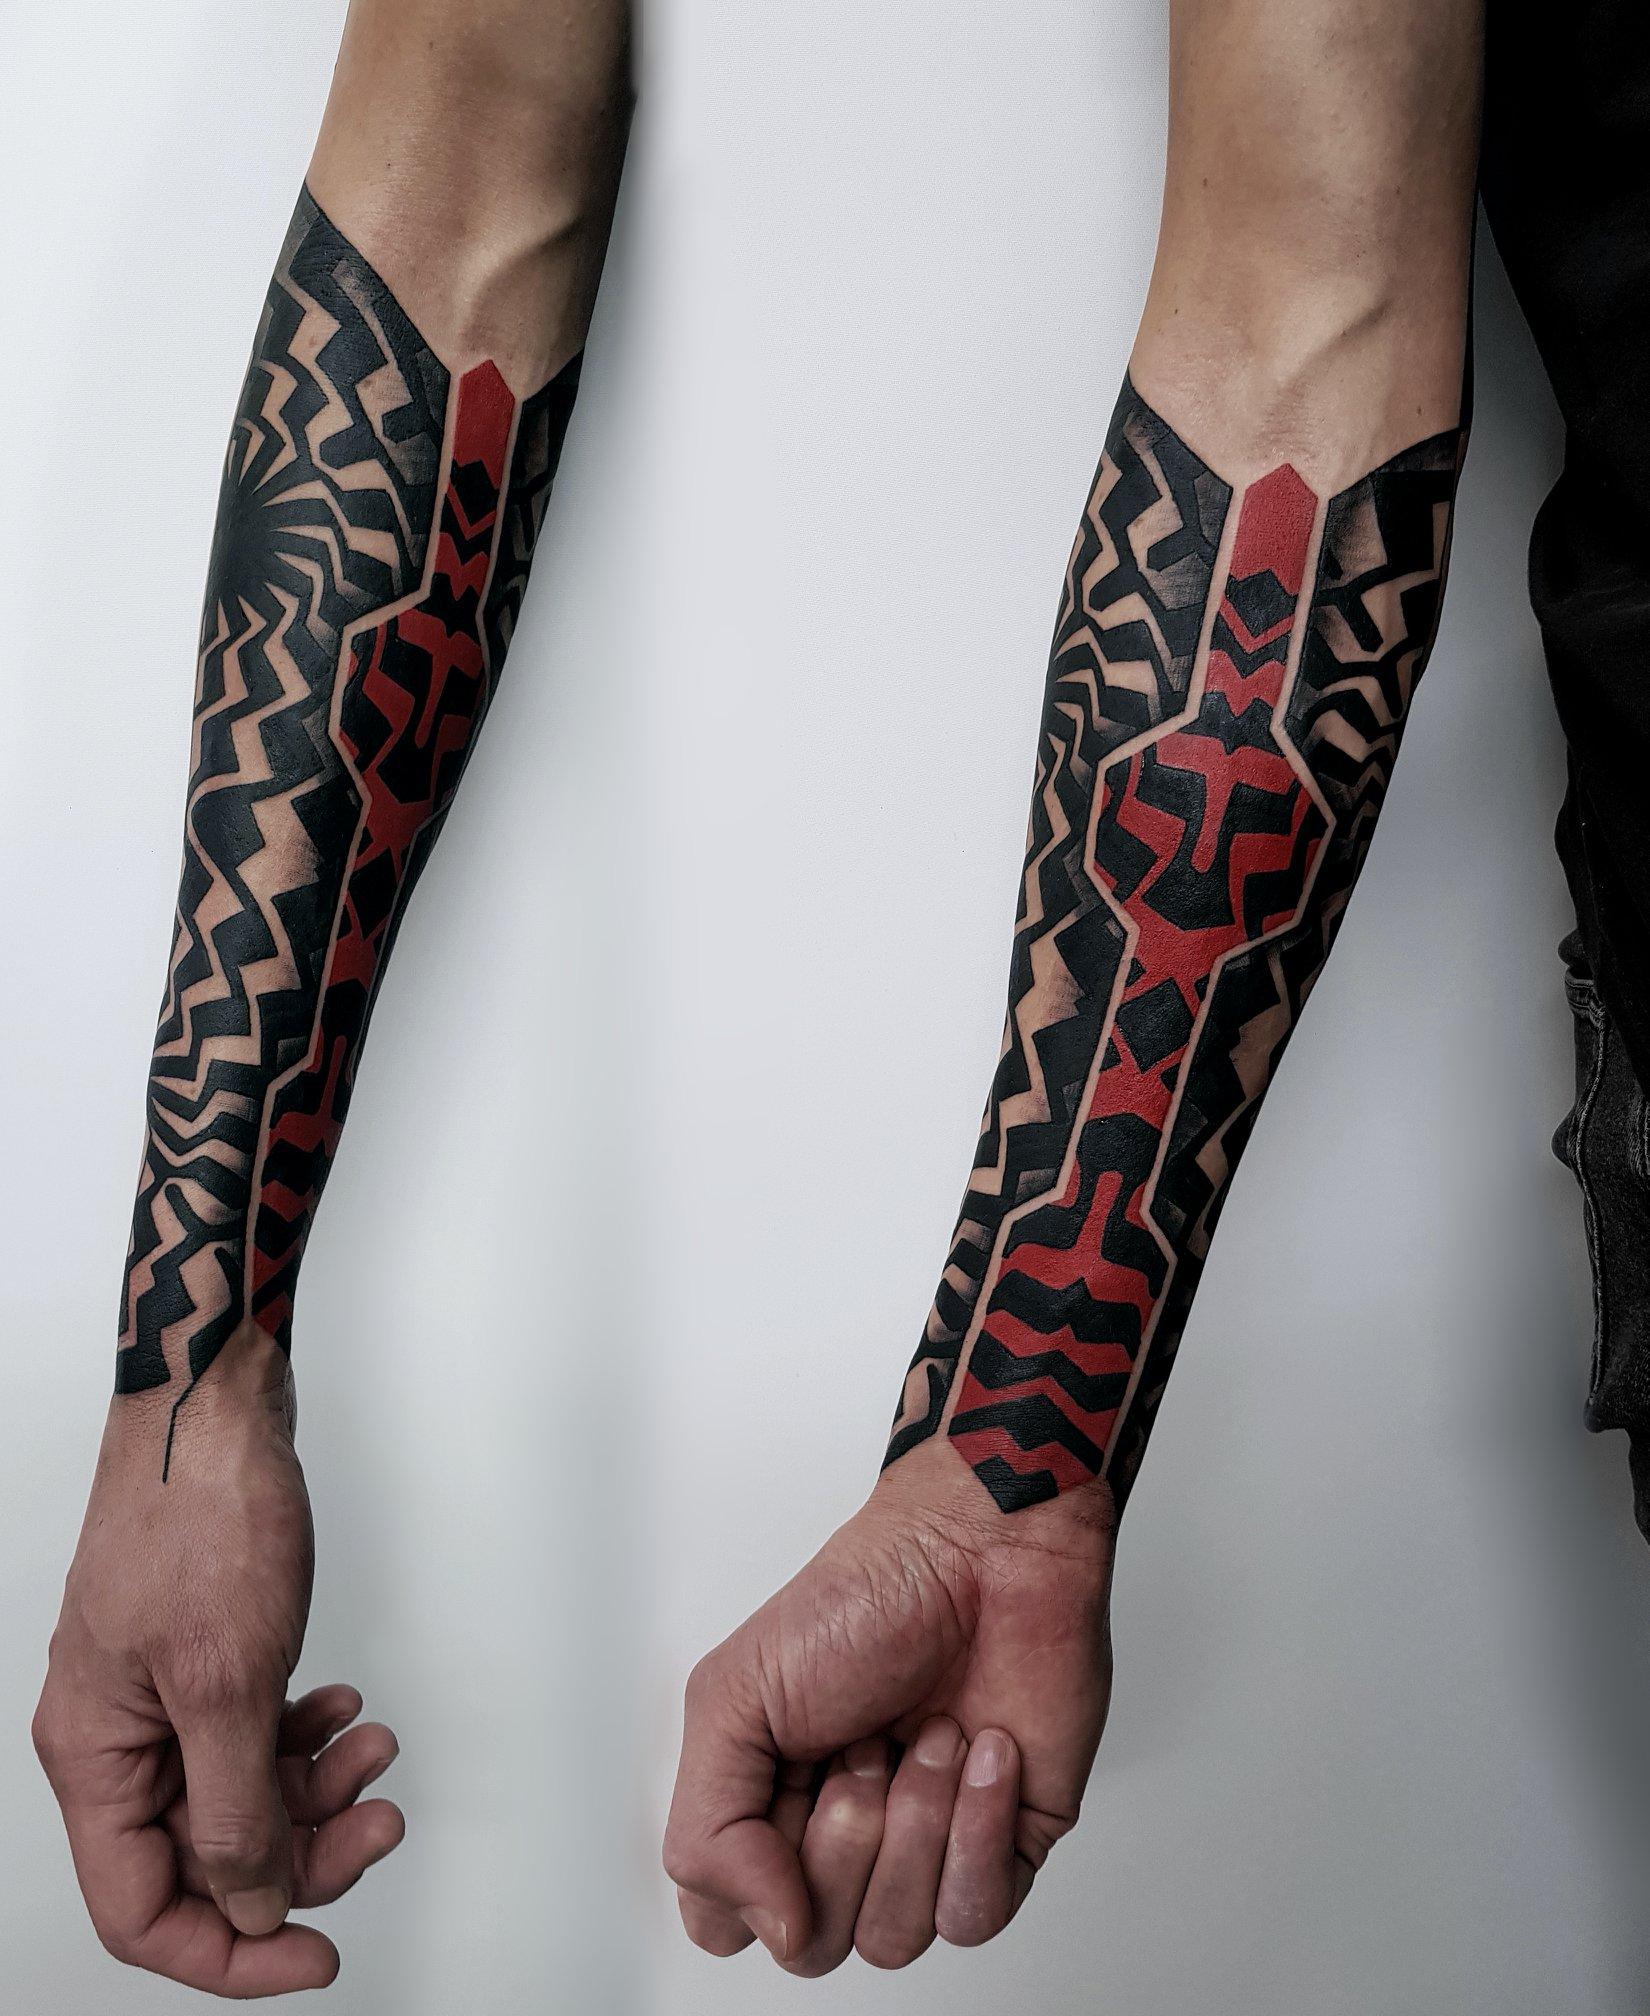 Inksearch tattoo Haxan